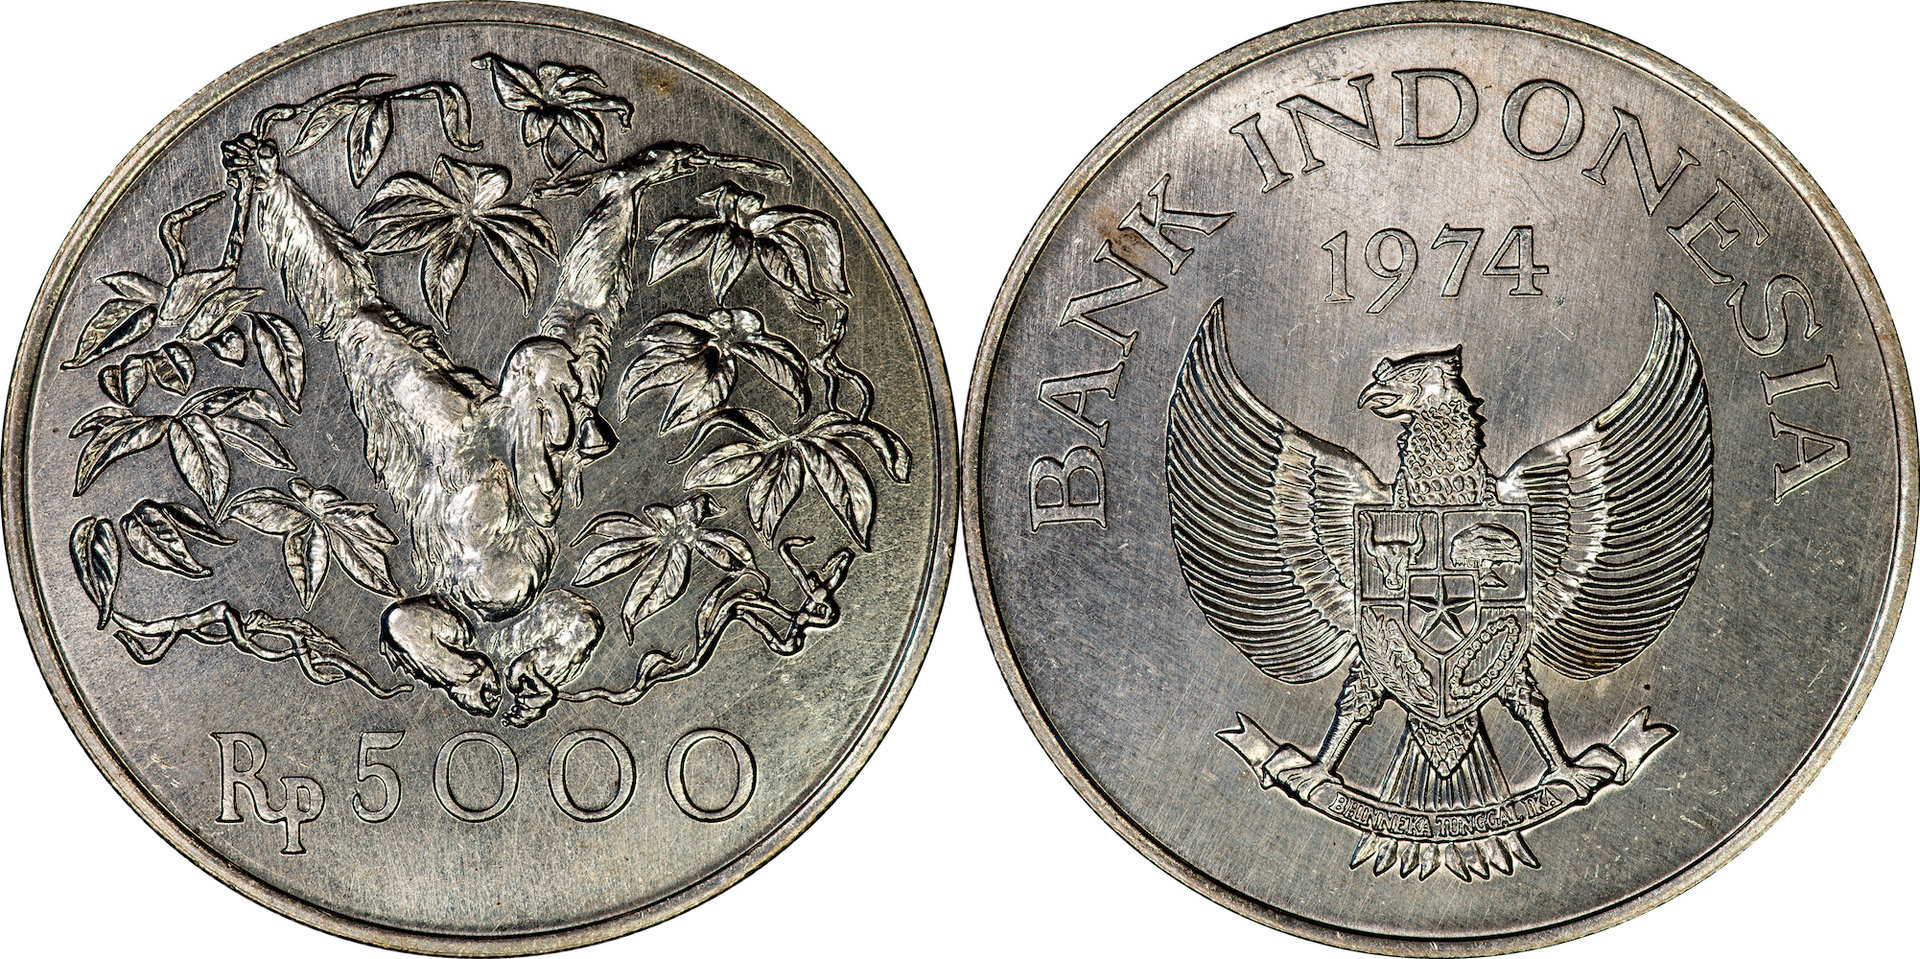 Indonesia - 1974 5000 Rupiah.jpg